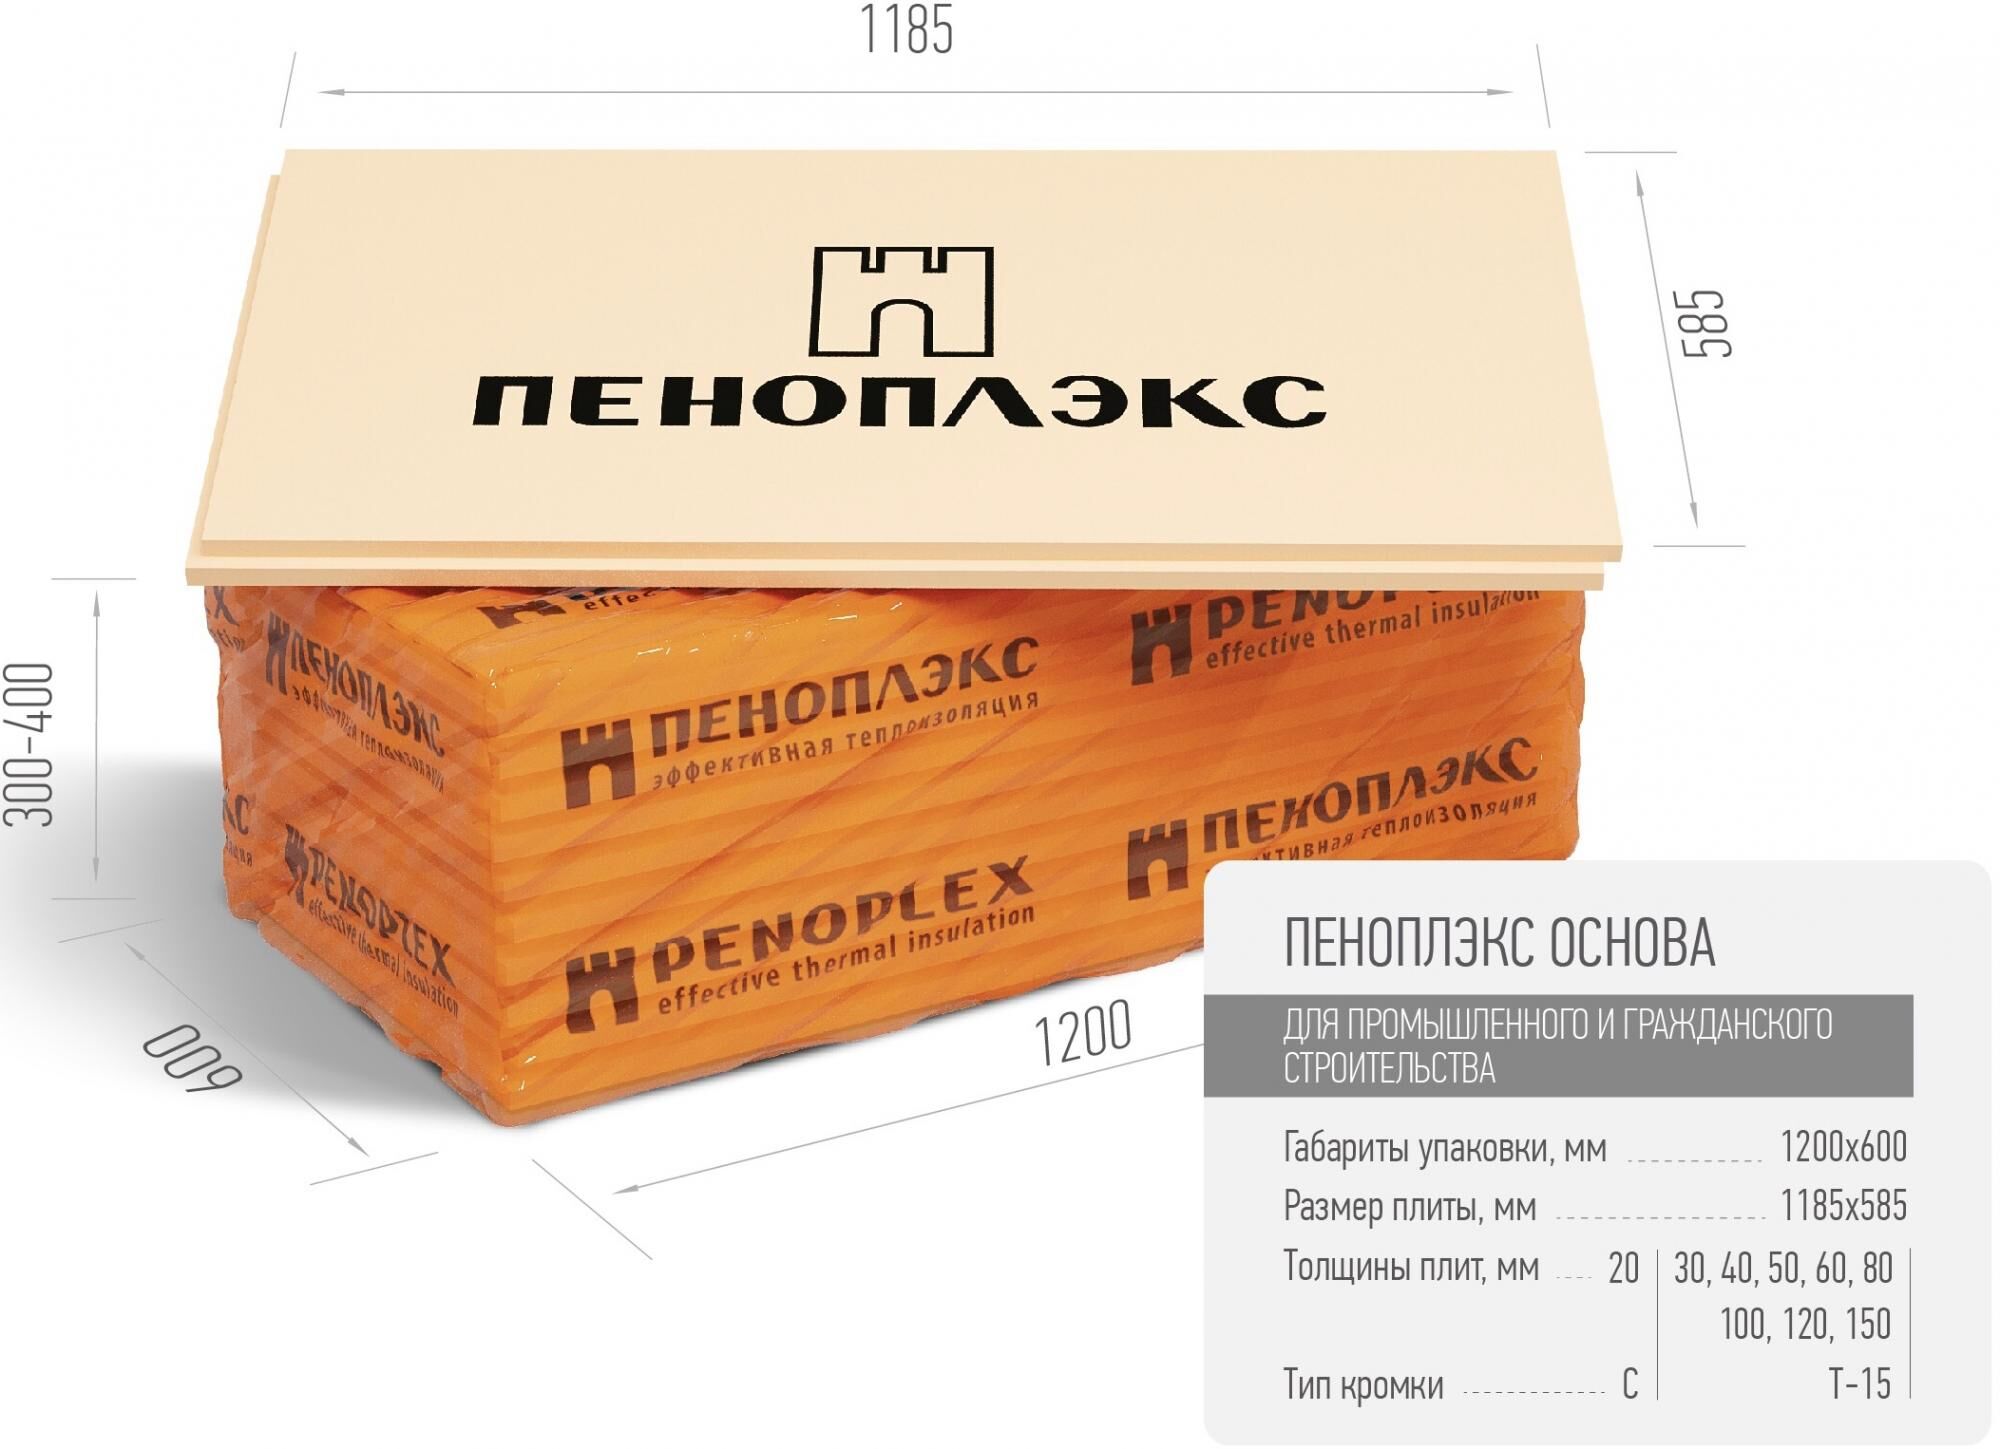 Экструзионный пенополистирол ПЕНОПЛЭКС ОСНОВА ® 100 мм Пеноплэкс